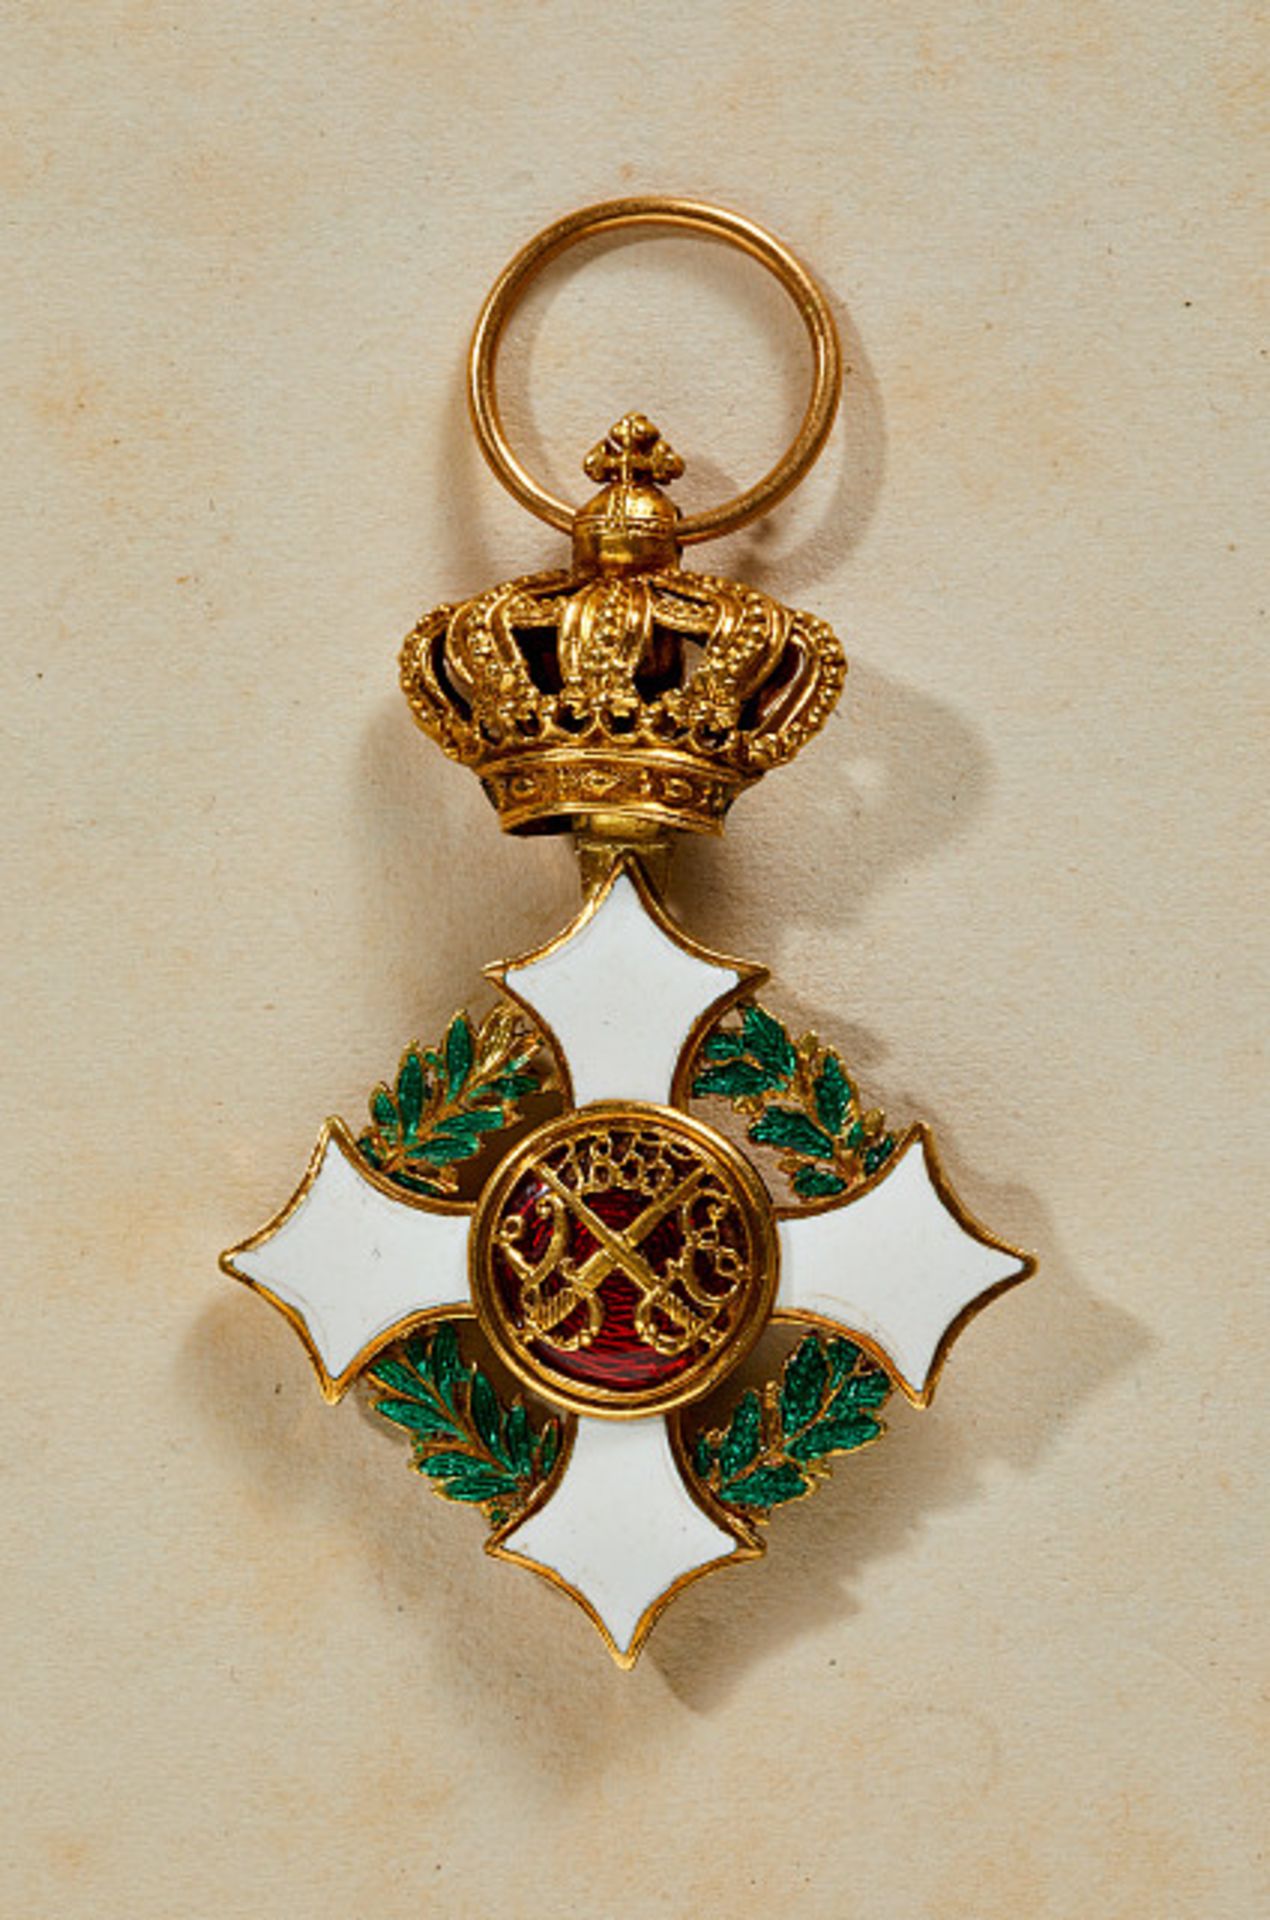 Ausländische Orden & Ehrenzeichen - Italien : Militärorden von Savoyen Militärorden von Savoyen.